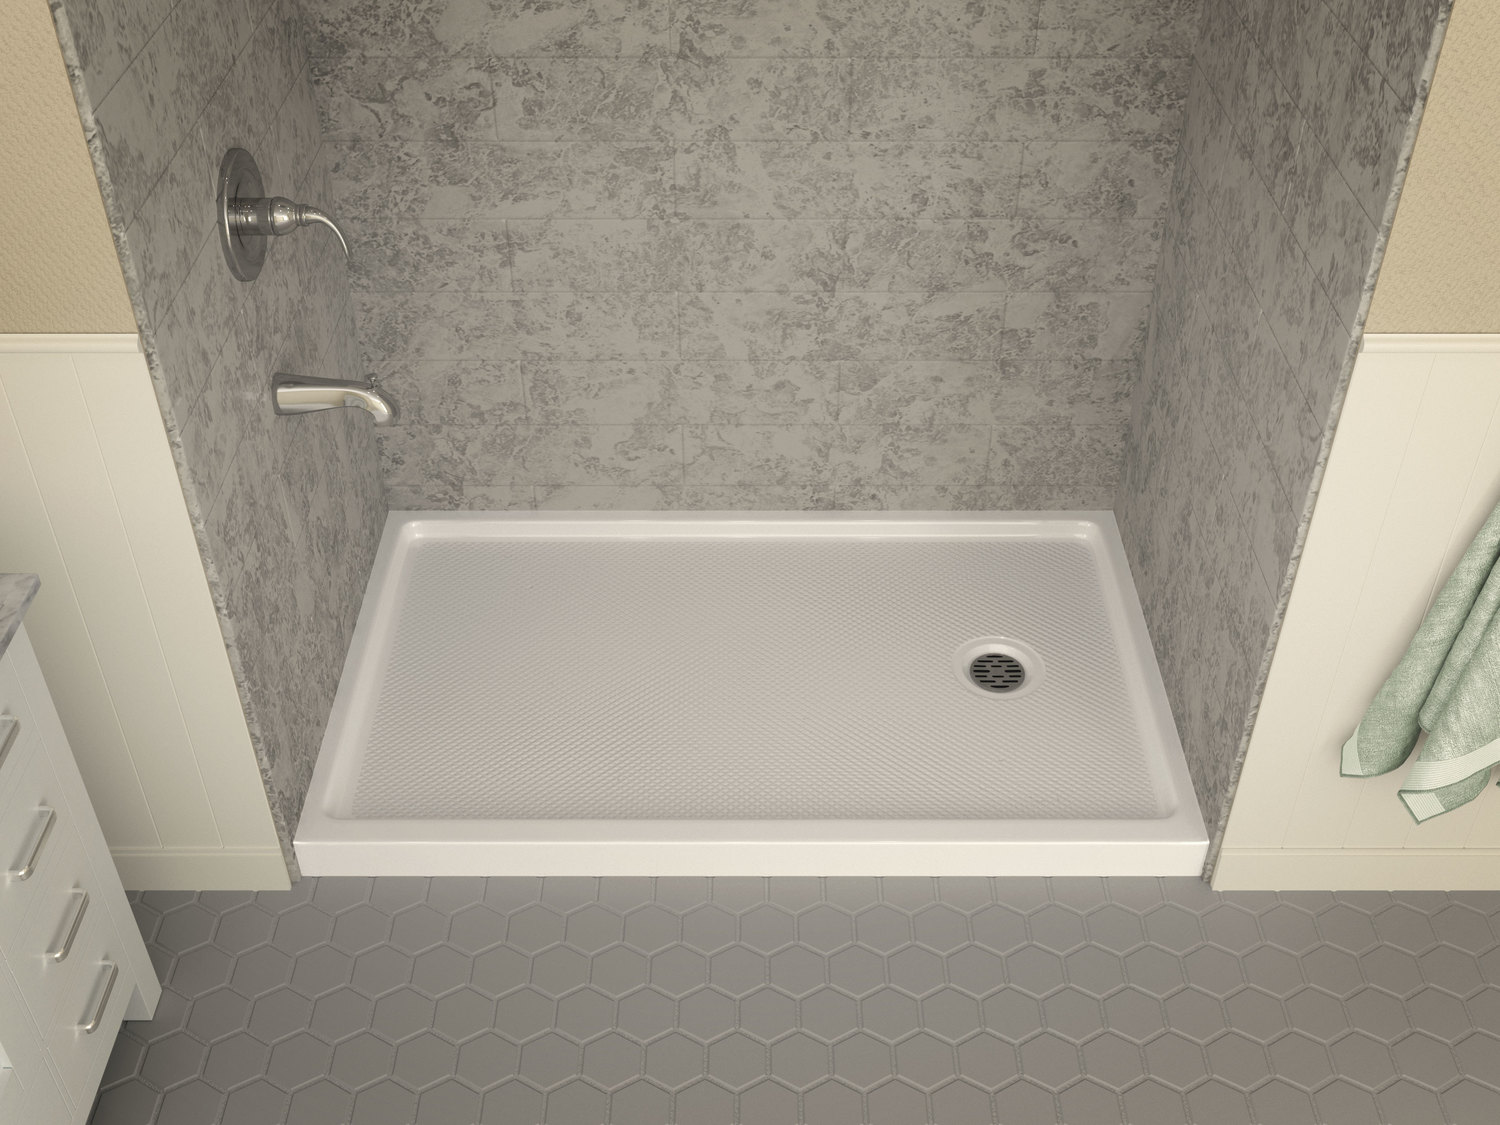  Anzzi SHOWER - Shower Bases - Single Threshold Shower Floor White